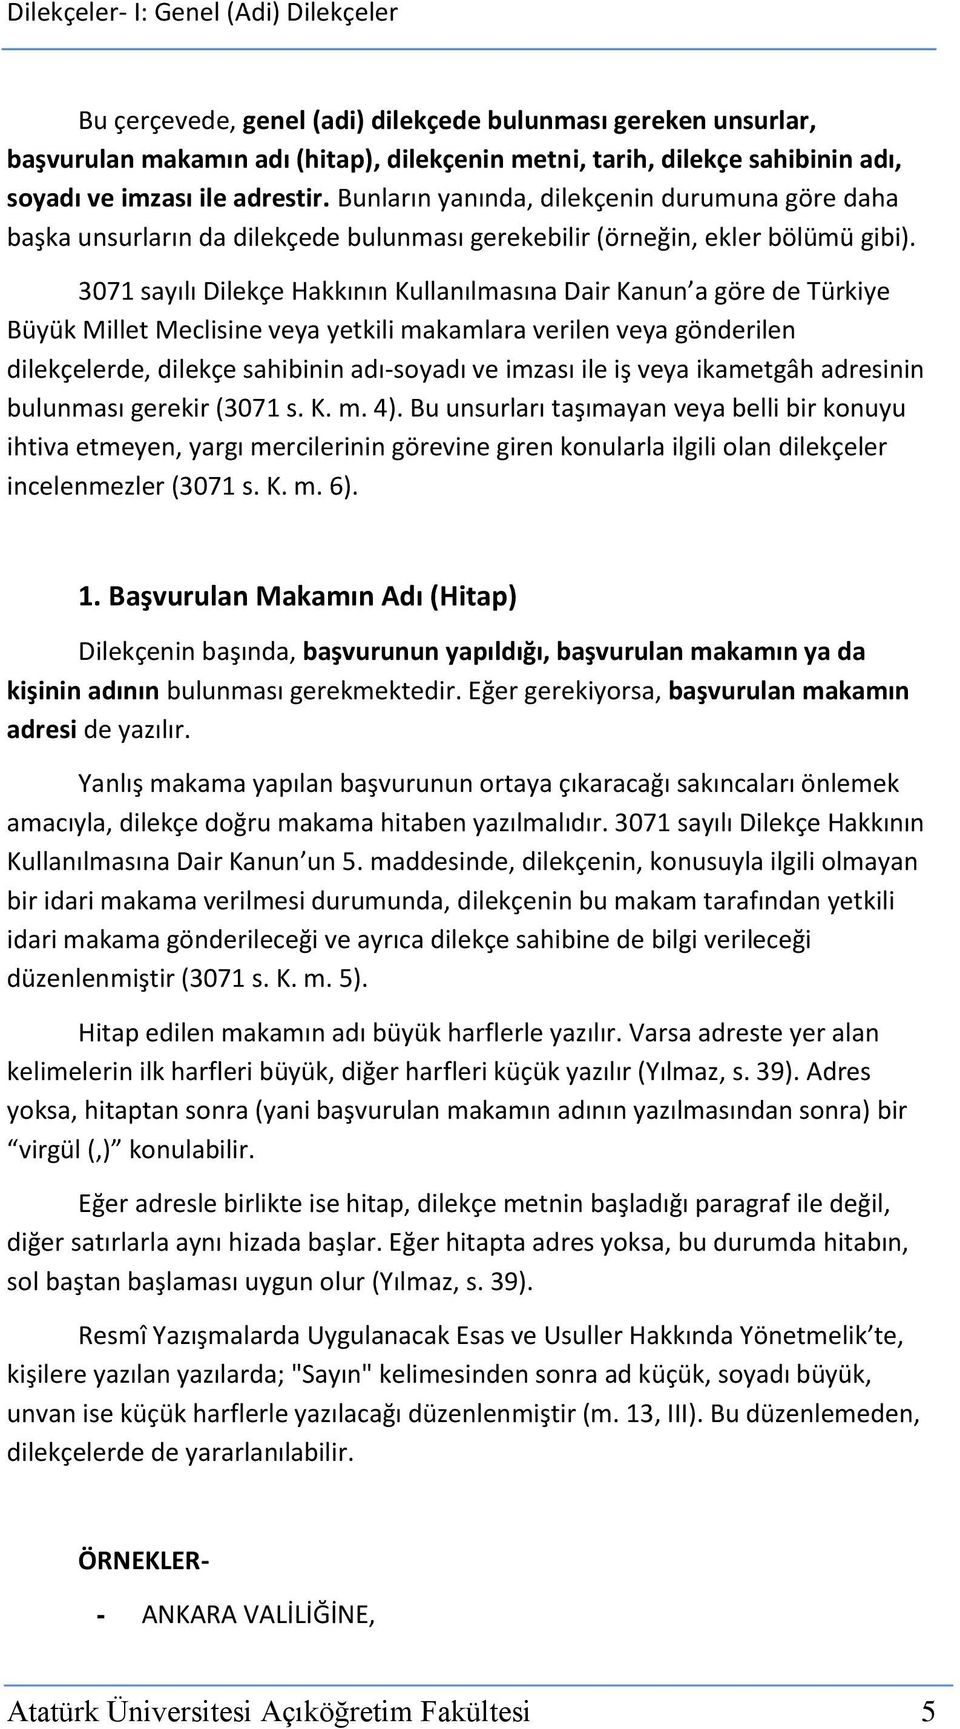 3071 sayılı Dilekçe Hakkının Kullanılmasına Dair Kanun a göre de Türkiye Büyük Millet Meclisine veya yetkili makamlara verilen veya gönderilen dilekçelerde, dilekçe sahibinin adı-soyadı ve imzası ile